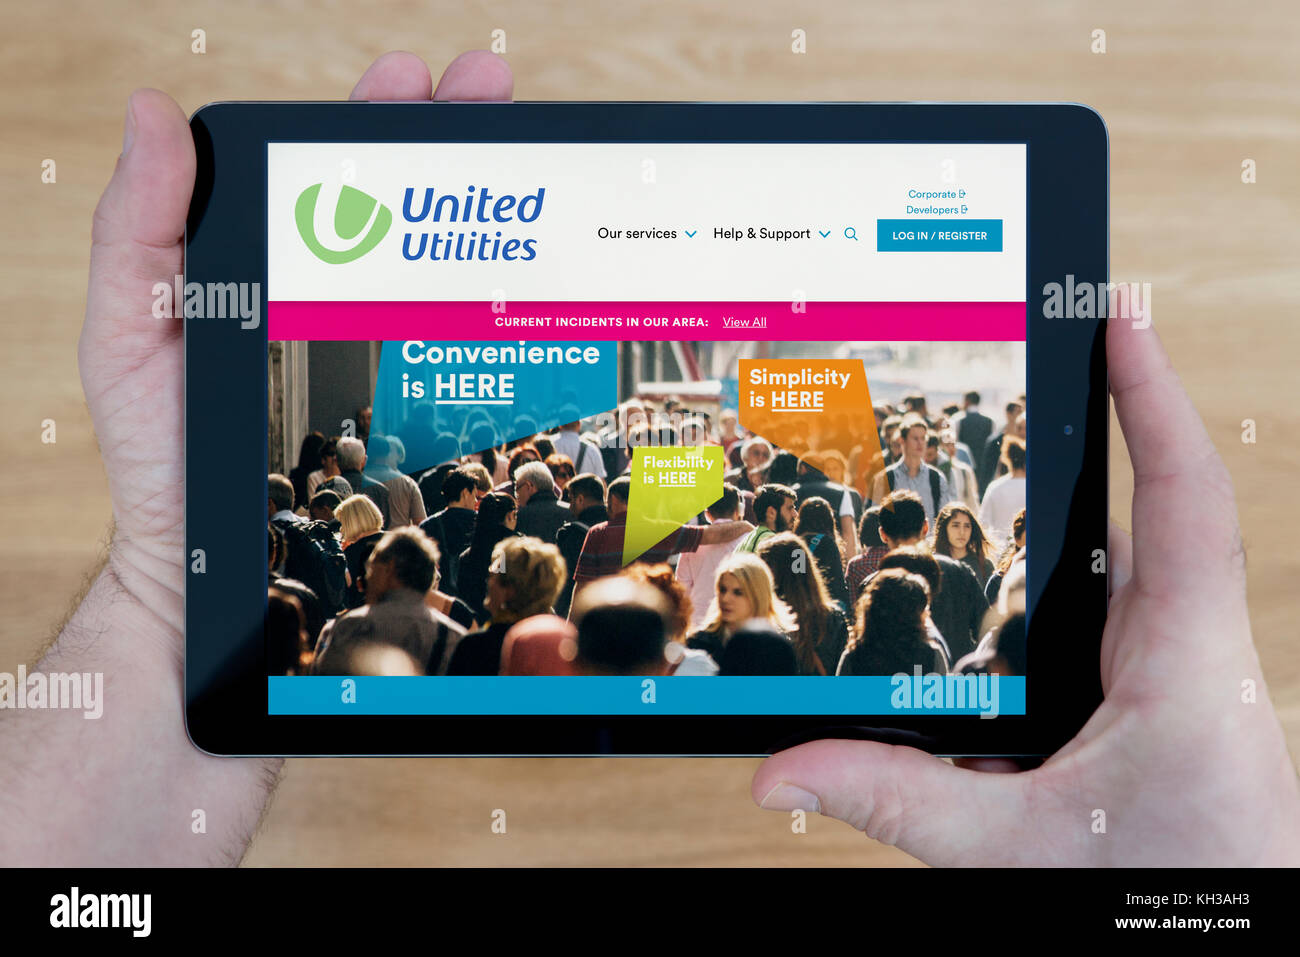 Un homme regarde le site web de United Utilities sur son iPad tablet device, tourné contre une table en bois page contexte (usage éditorial uniquement) Banque D'Images